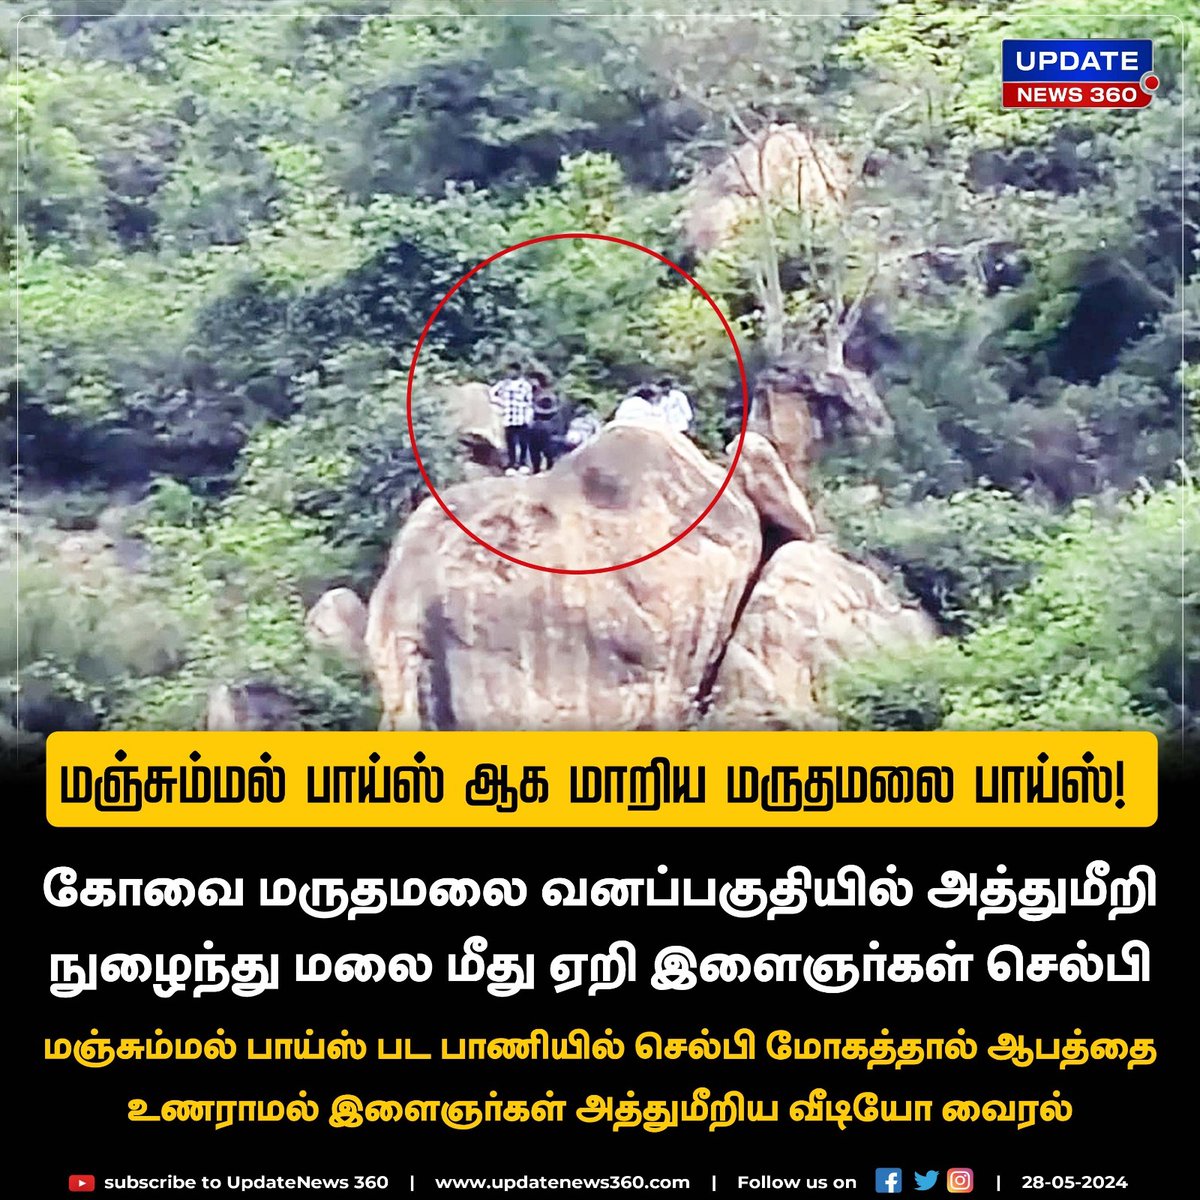 செல்பி மோகத்தால் மருதமலையில் இளைஞர்கள் அத்துமீறல்.. நடவடிக்கை பாயுமா?

#UpdateNews | #Coimbatore | #Marudhamalai | #MarudhamalaiHills | #Selfie | #TamilNews | #UpdateNews360